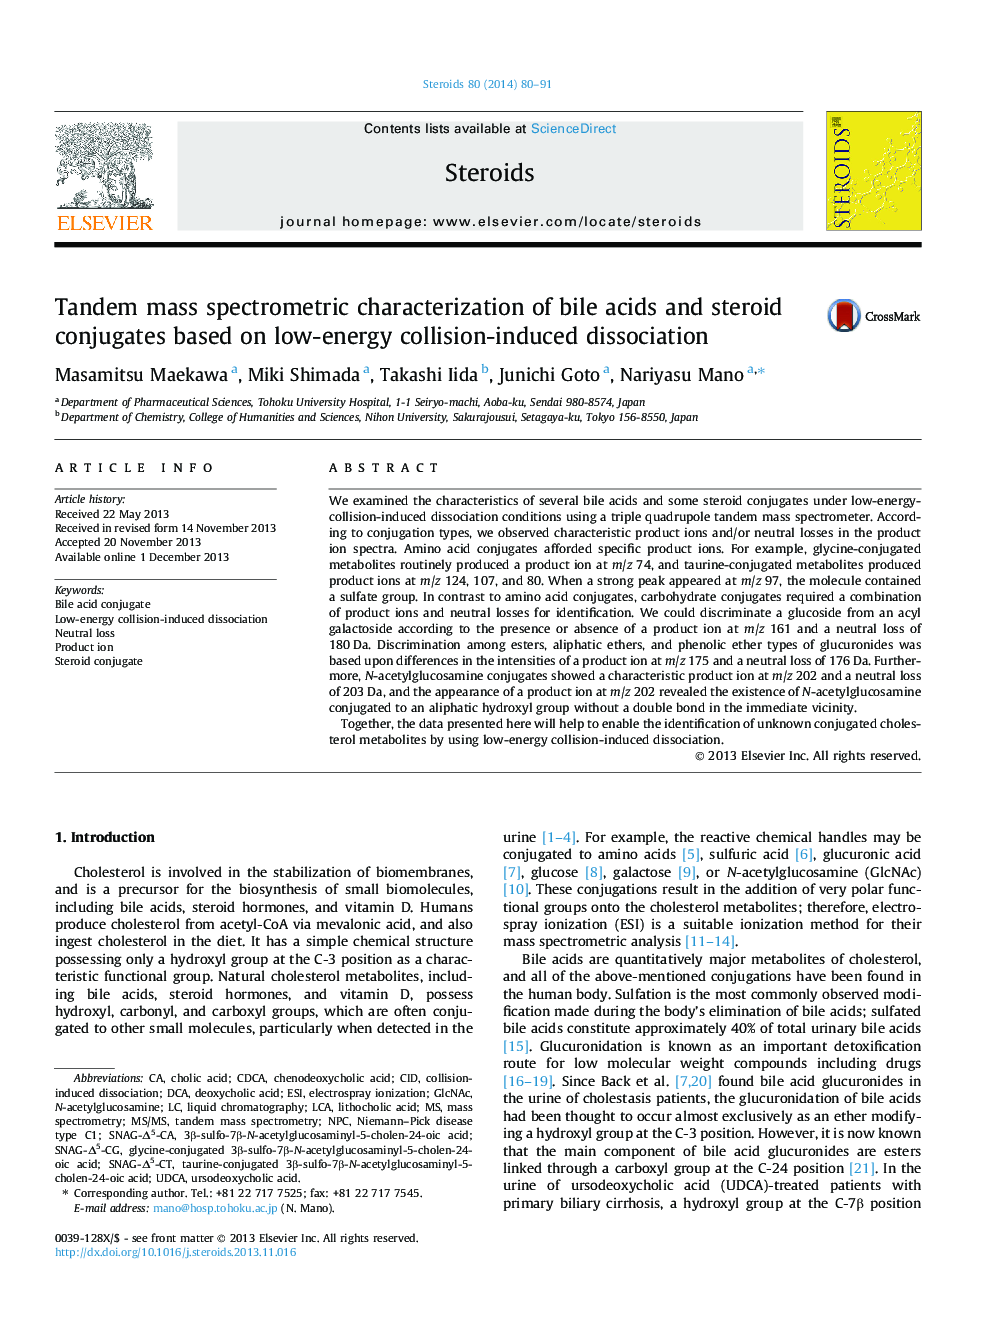 خصوصیات اسپکترومتری توده ی دوگانه اسیدهای صفراوی و کنگوات های استروئیدی براساس تقارن ناشی از برخورد کم انرژی 